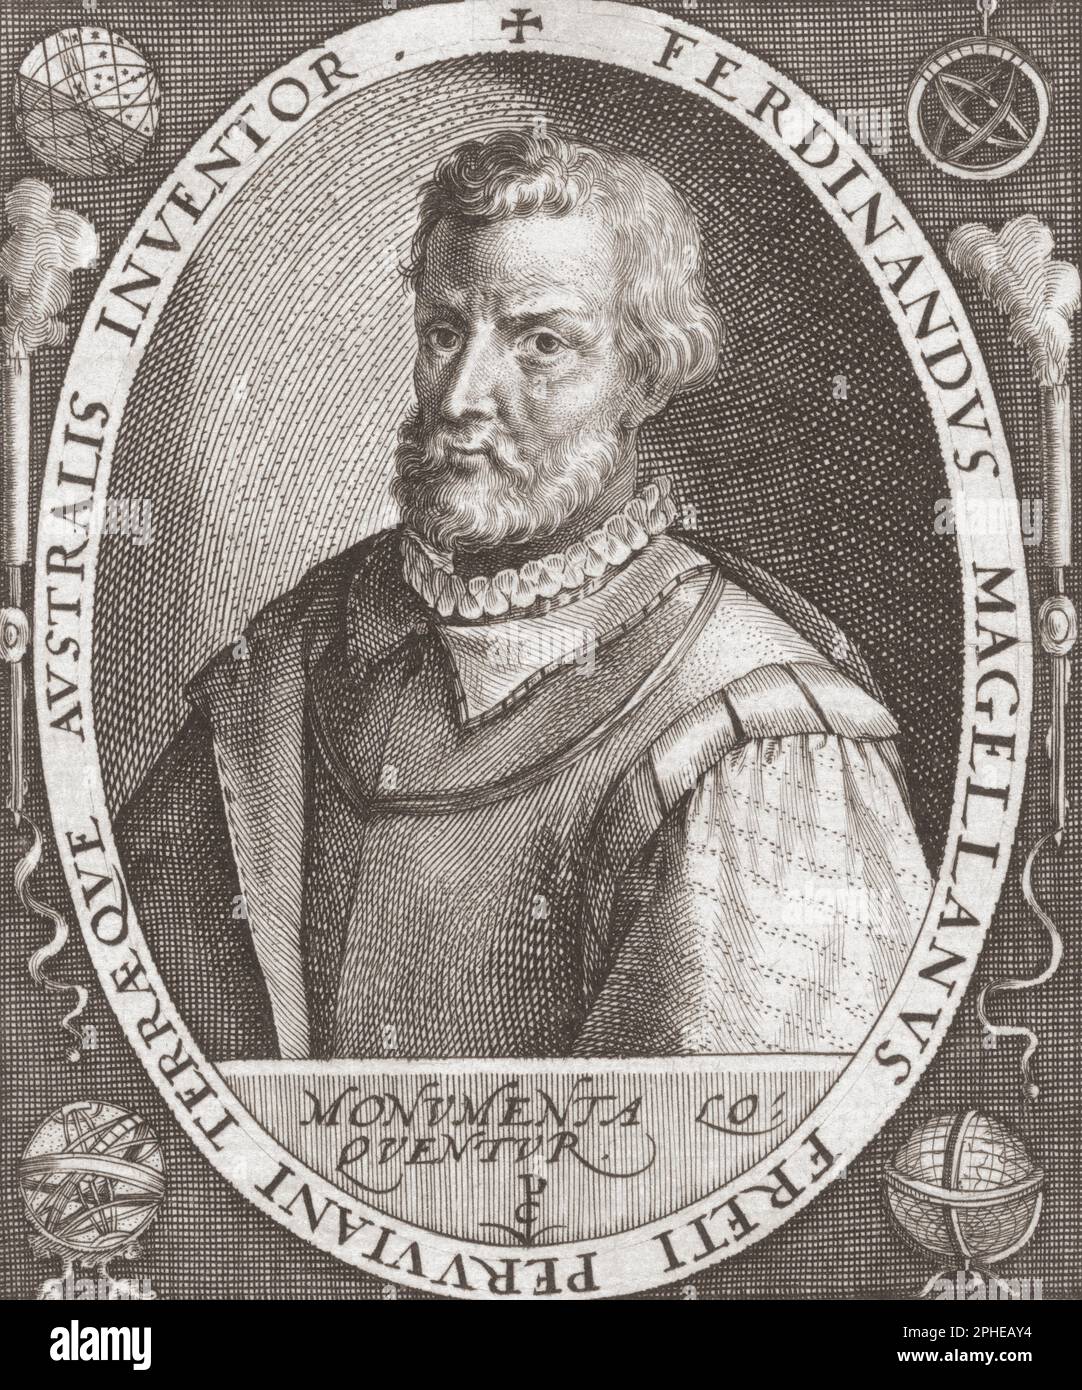 Ferdinand Magellan, 1480-1521. Portugiesischer Meeresforscher. Nach einer Gravur von Crispijn van de Passe. Stockfoto